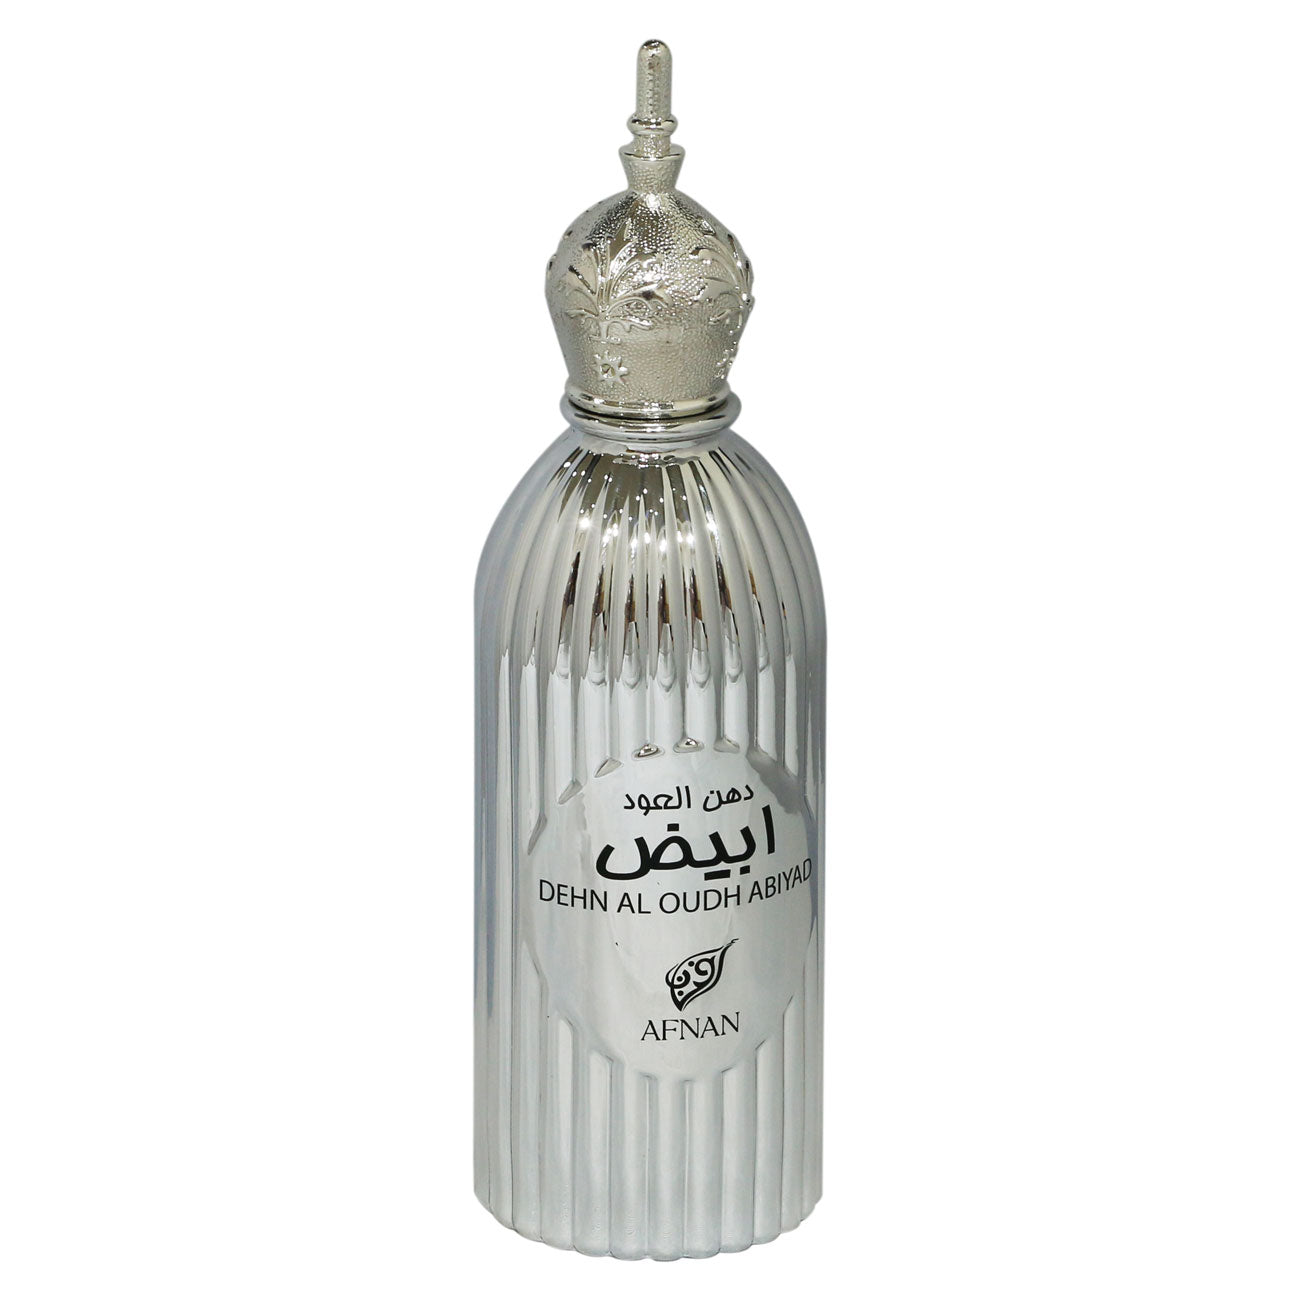 Afnan Dehn al Oudh Abiyad perfume for men and women edp 100ml - samawa perfumes 